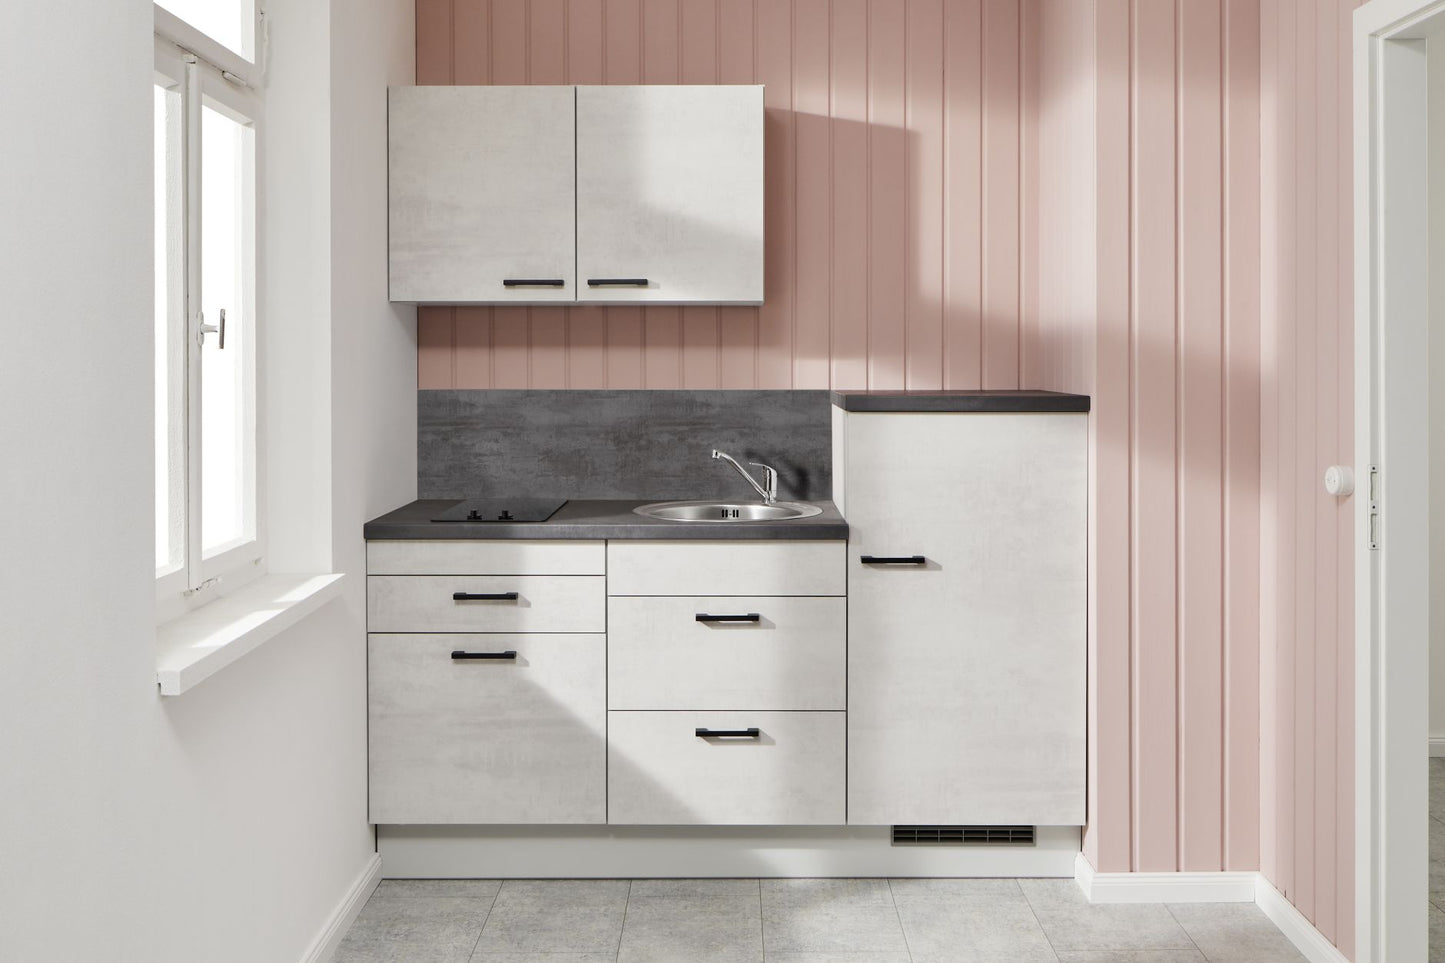 PKW 018019 kitchen unit 180 cm, cupboards in concrete white-gray